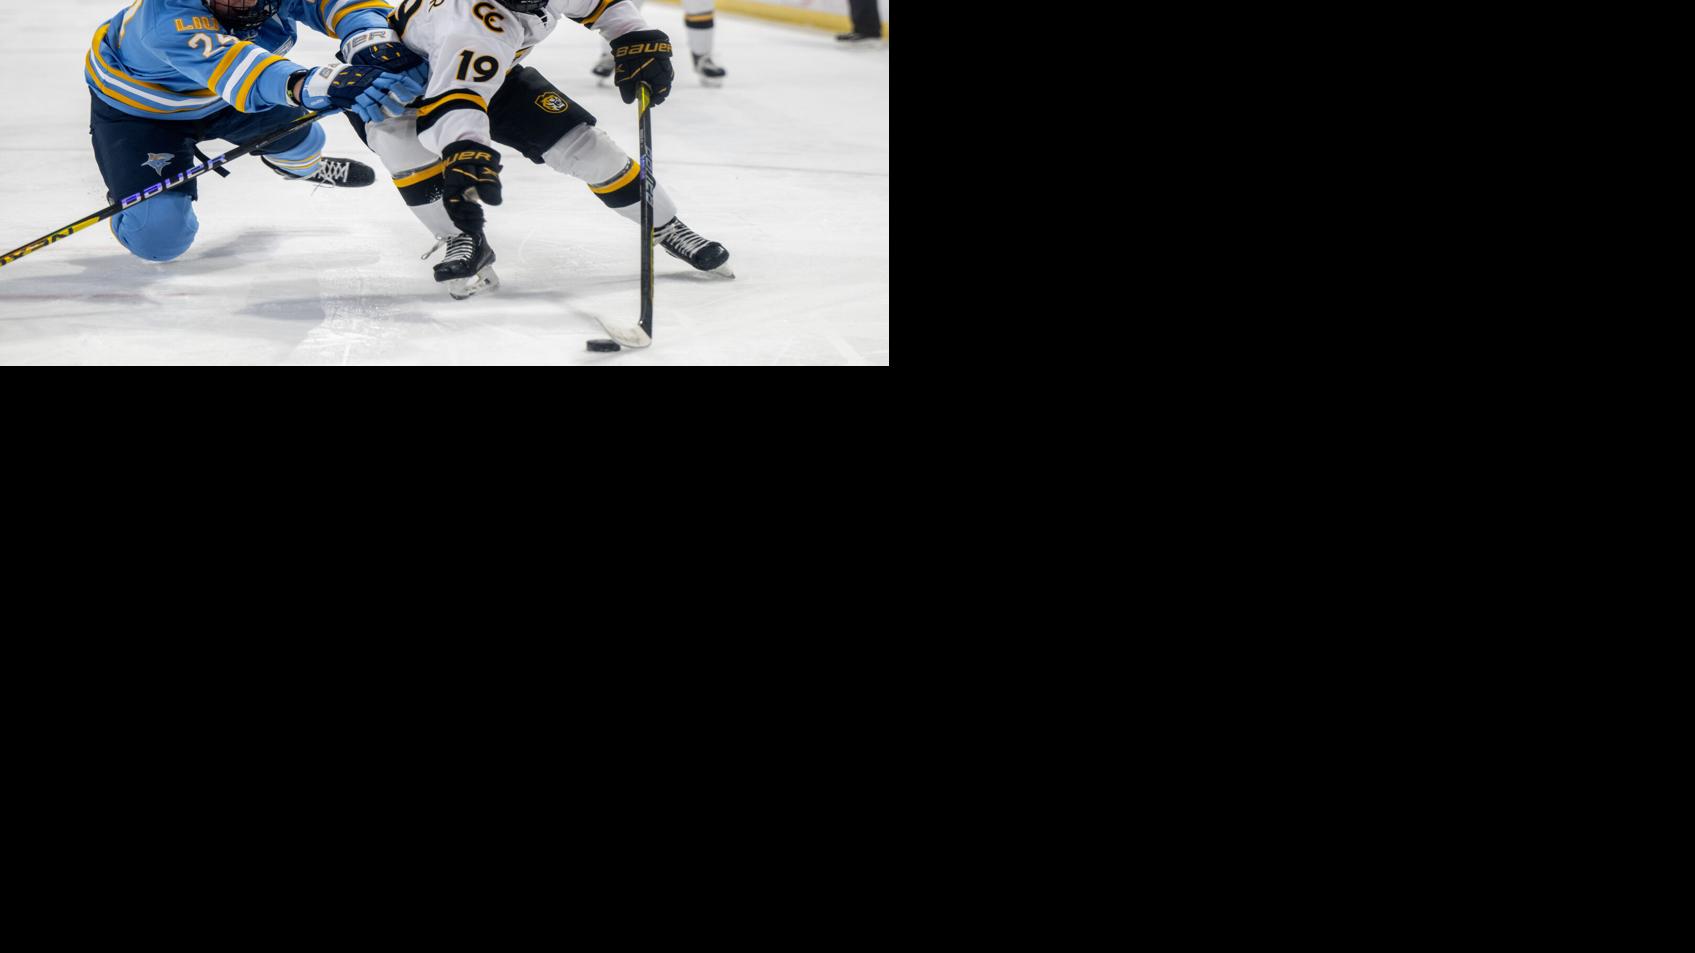 Colorado College hockey freshman Evan Werner transfers to Michigan